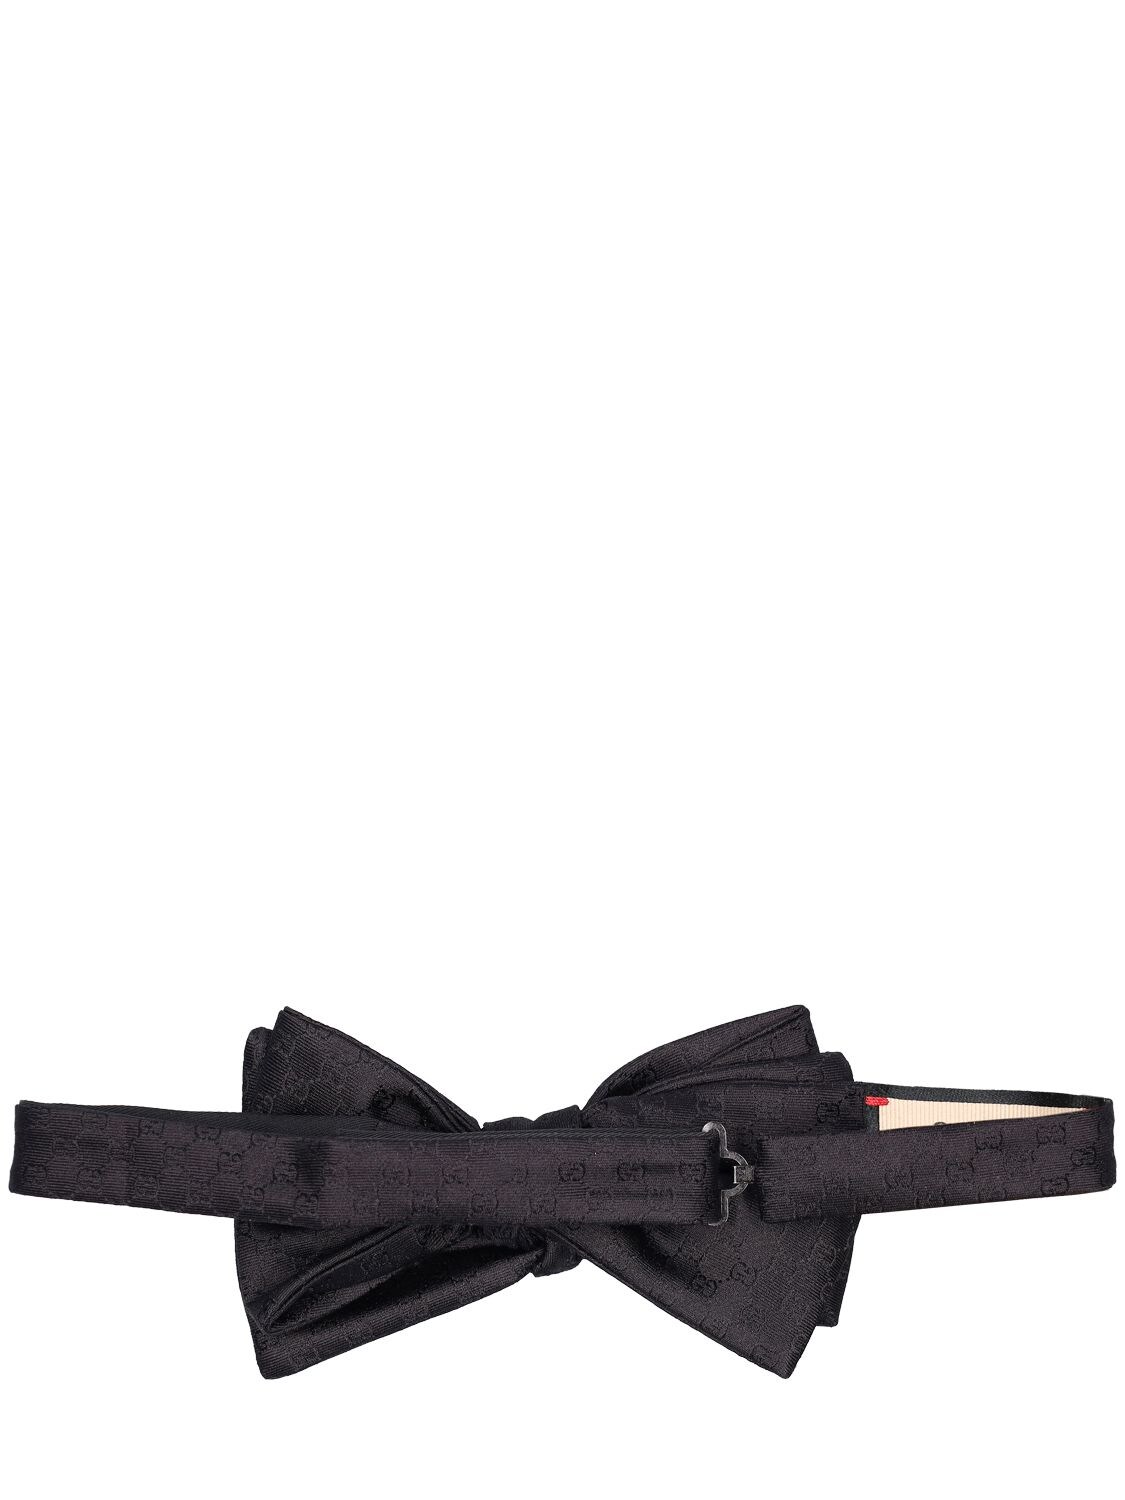 GG Silk Bow Tie in Black - Gucci